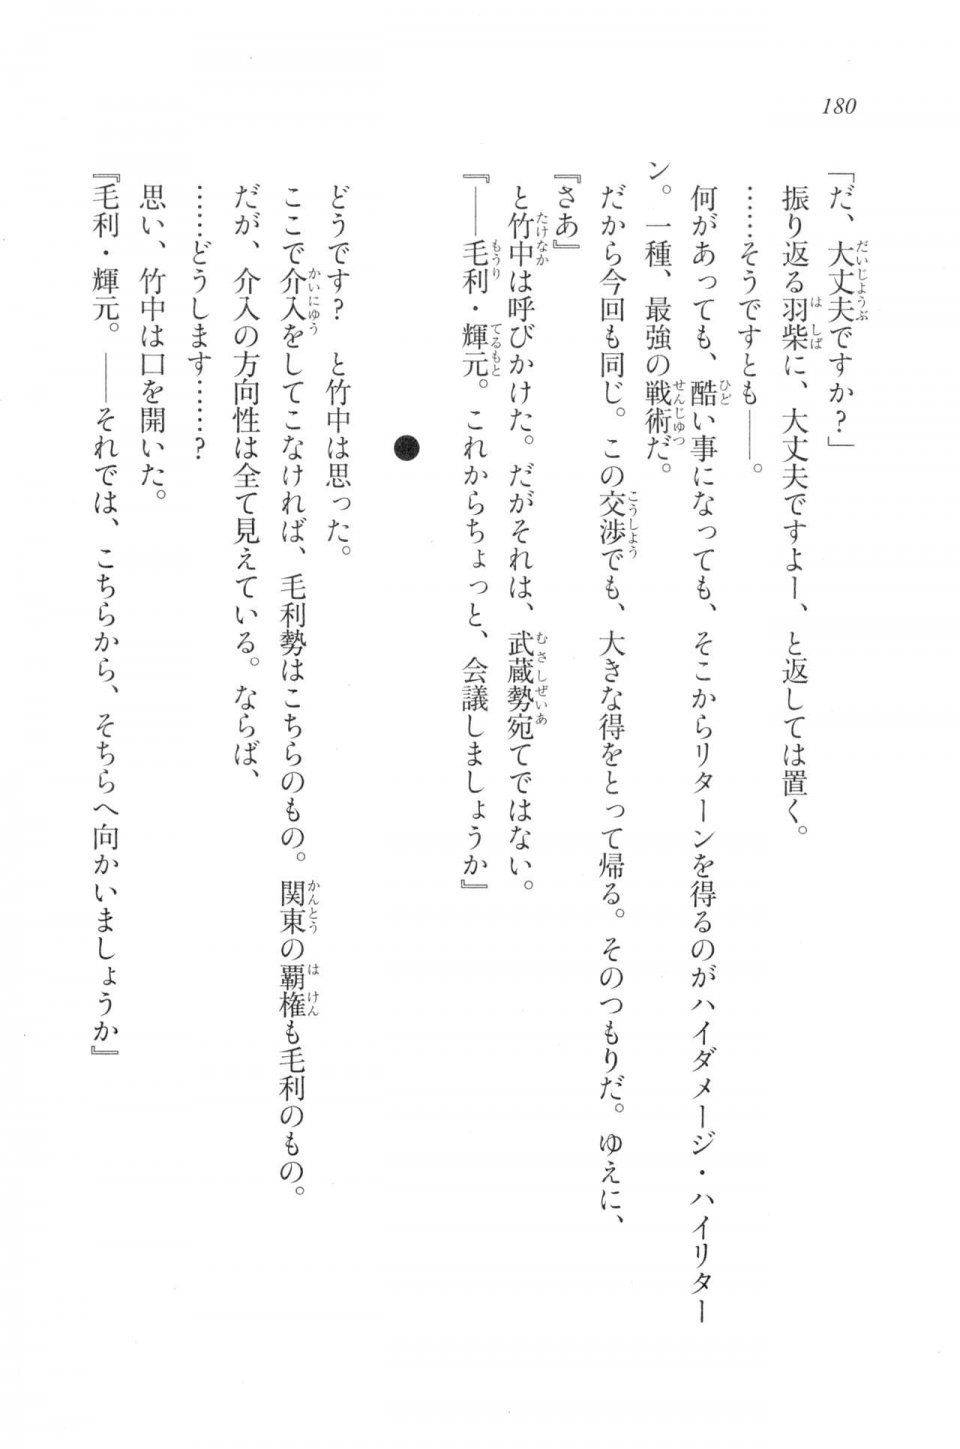 Kyoukai Senjou no Horizon LN Vol 20(8B) - Photo #180